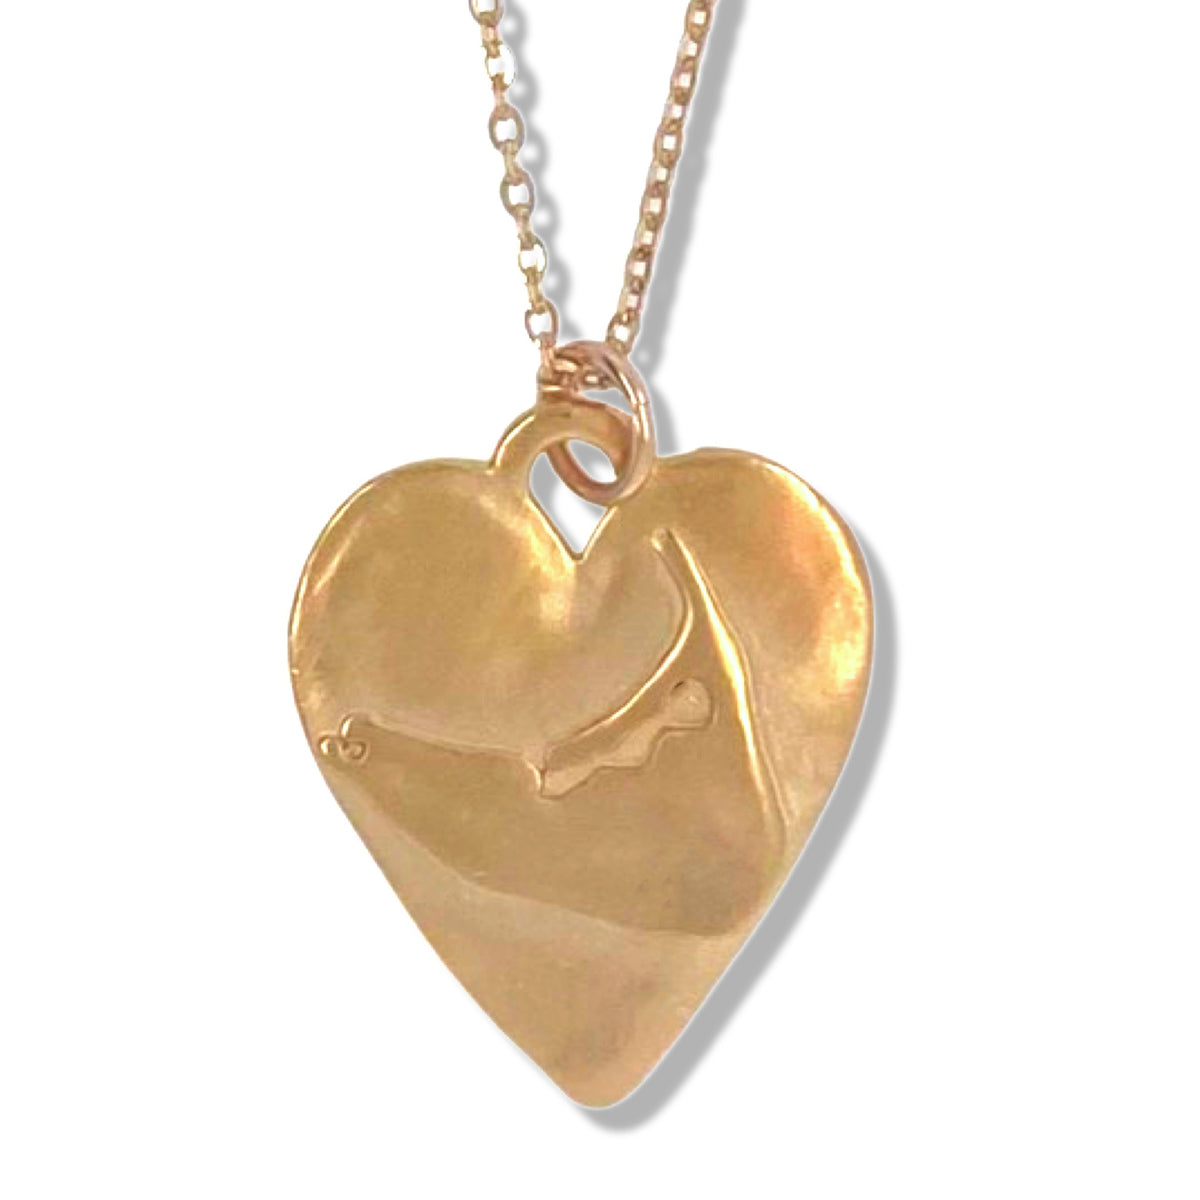 Nantucket Heart Necklace KSD Jewelry